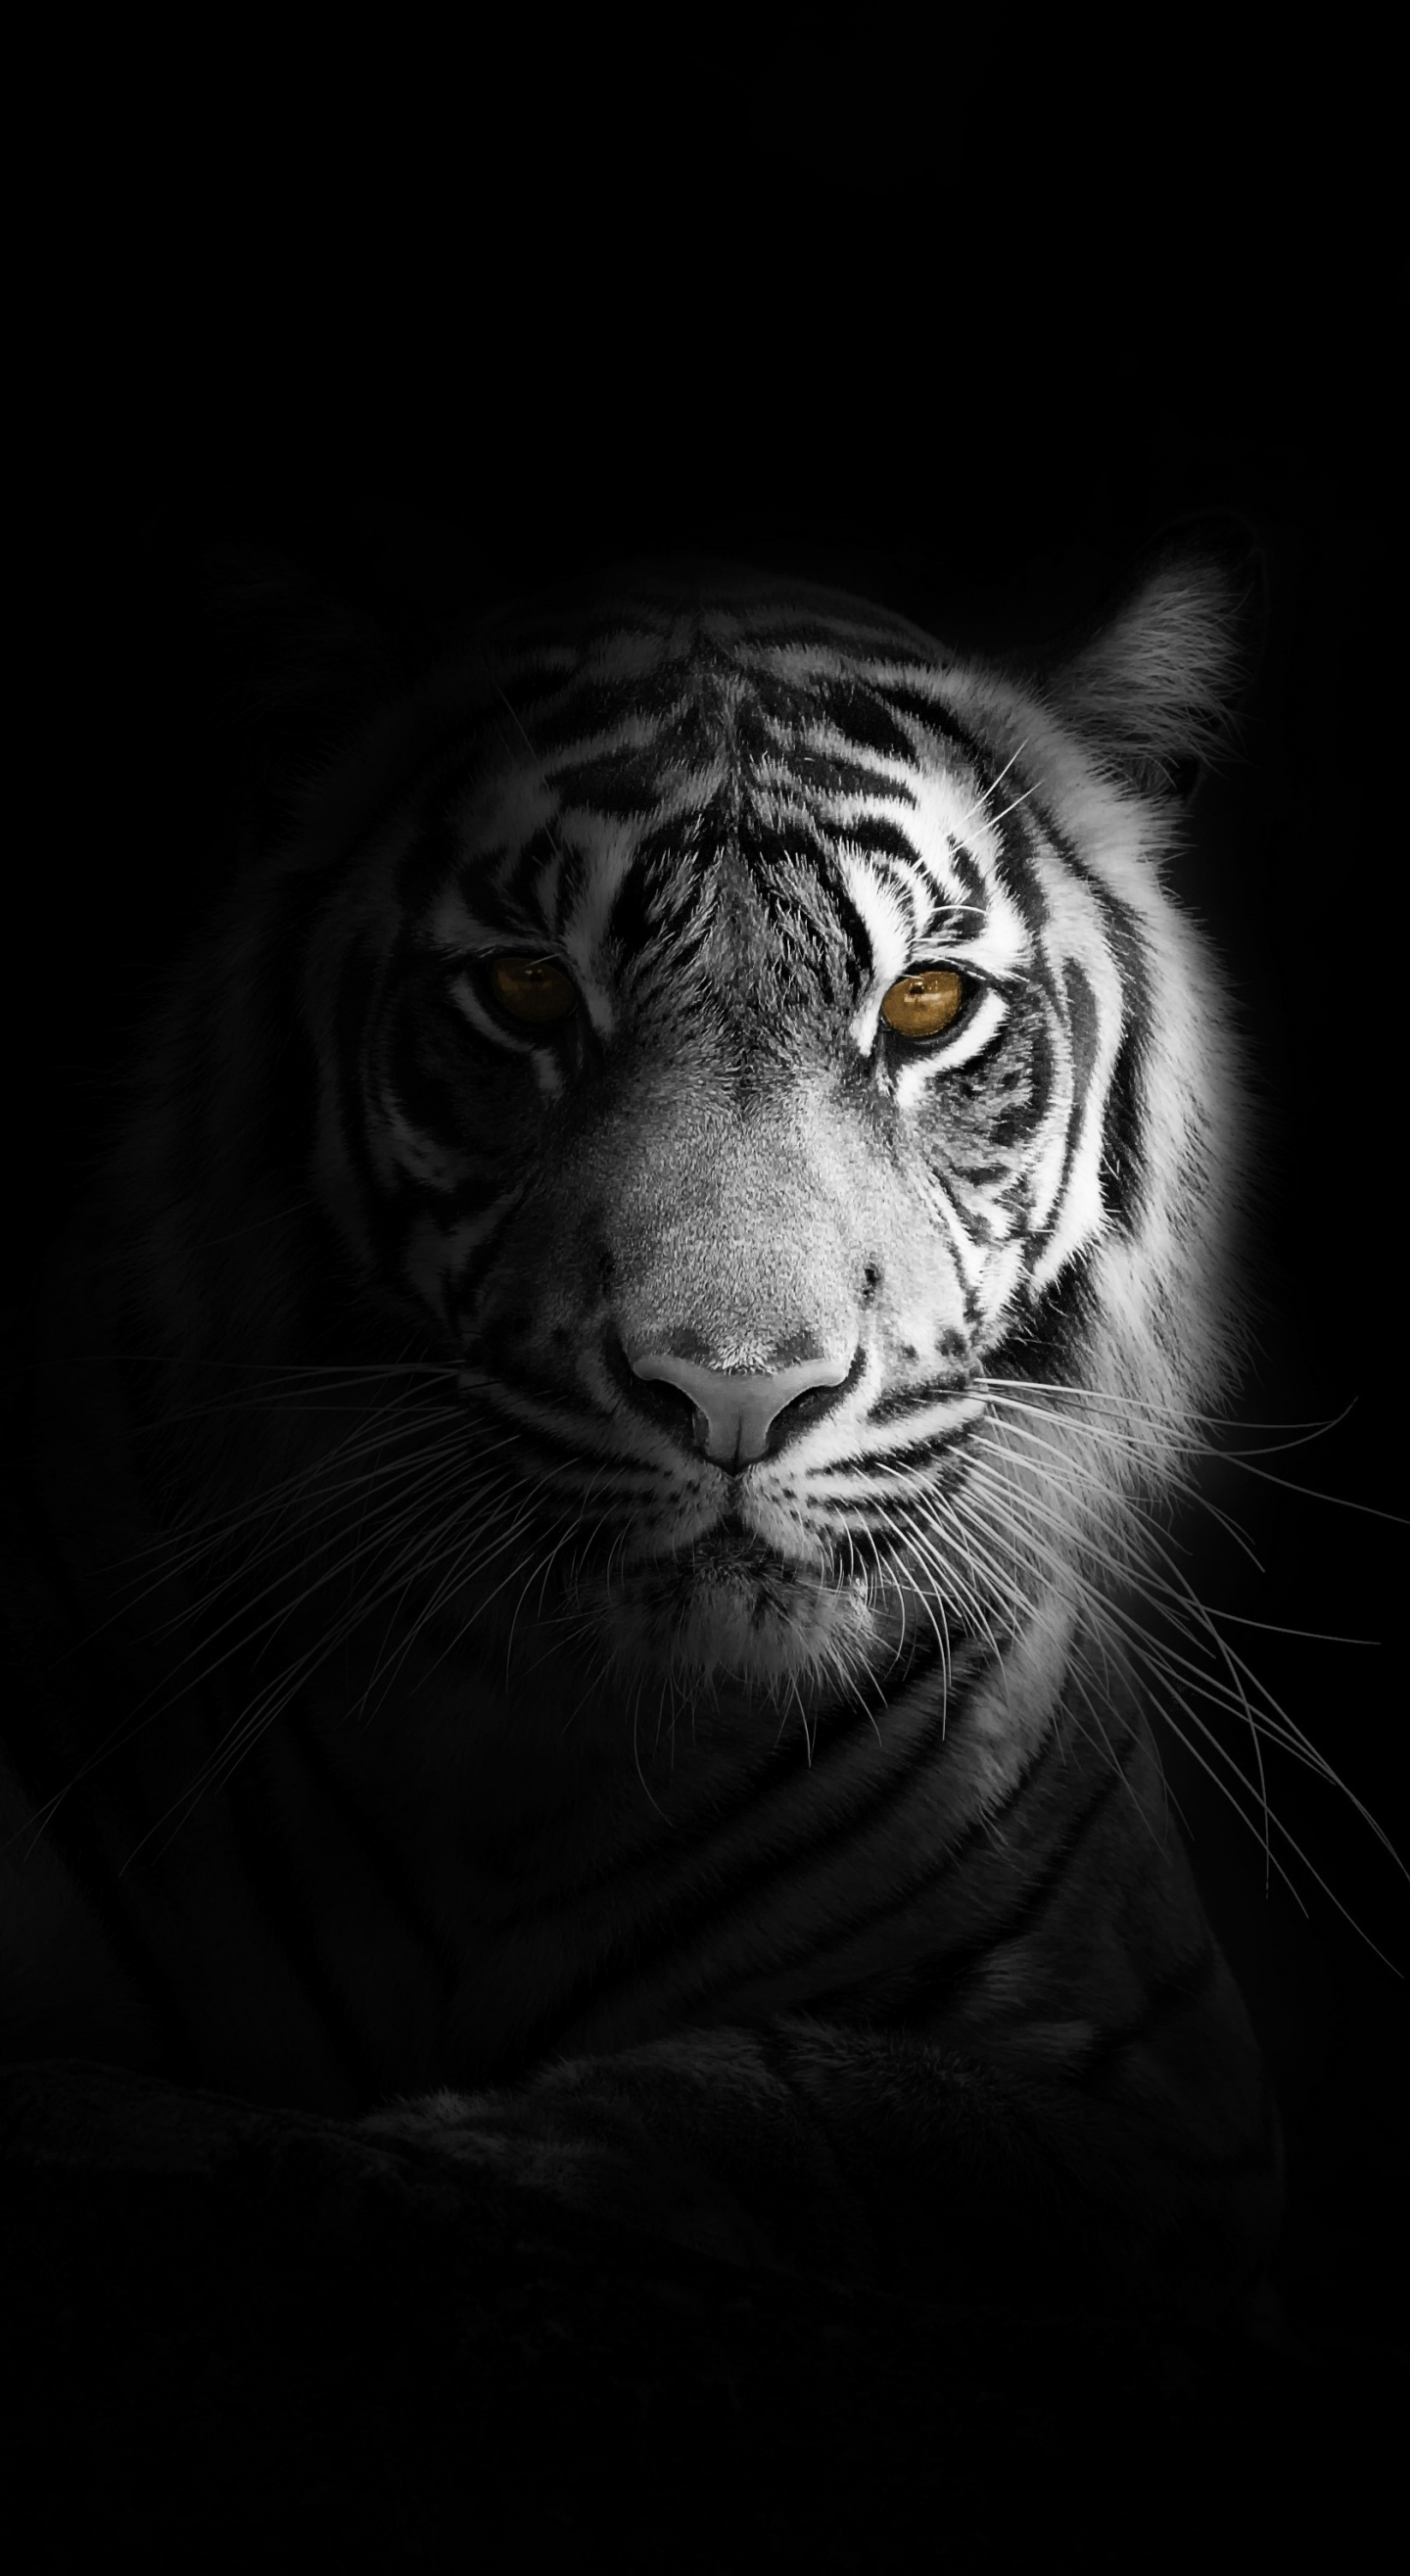 Được biết là một trong những loài vật hiếm có, hổ trắng đang trở thành một biểu tượng đầy tình yêu trên khắp thế giới. Nếu bạn cũng yêu thương những loài vật này, hãy xem ngay hình ảnh liên quan đến hổ trắng để cảm nhận sự hoang dã và đầy màu sắc của chúng.